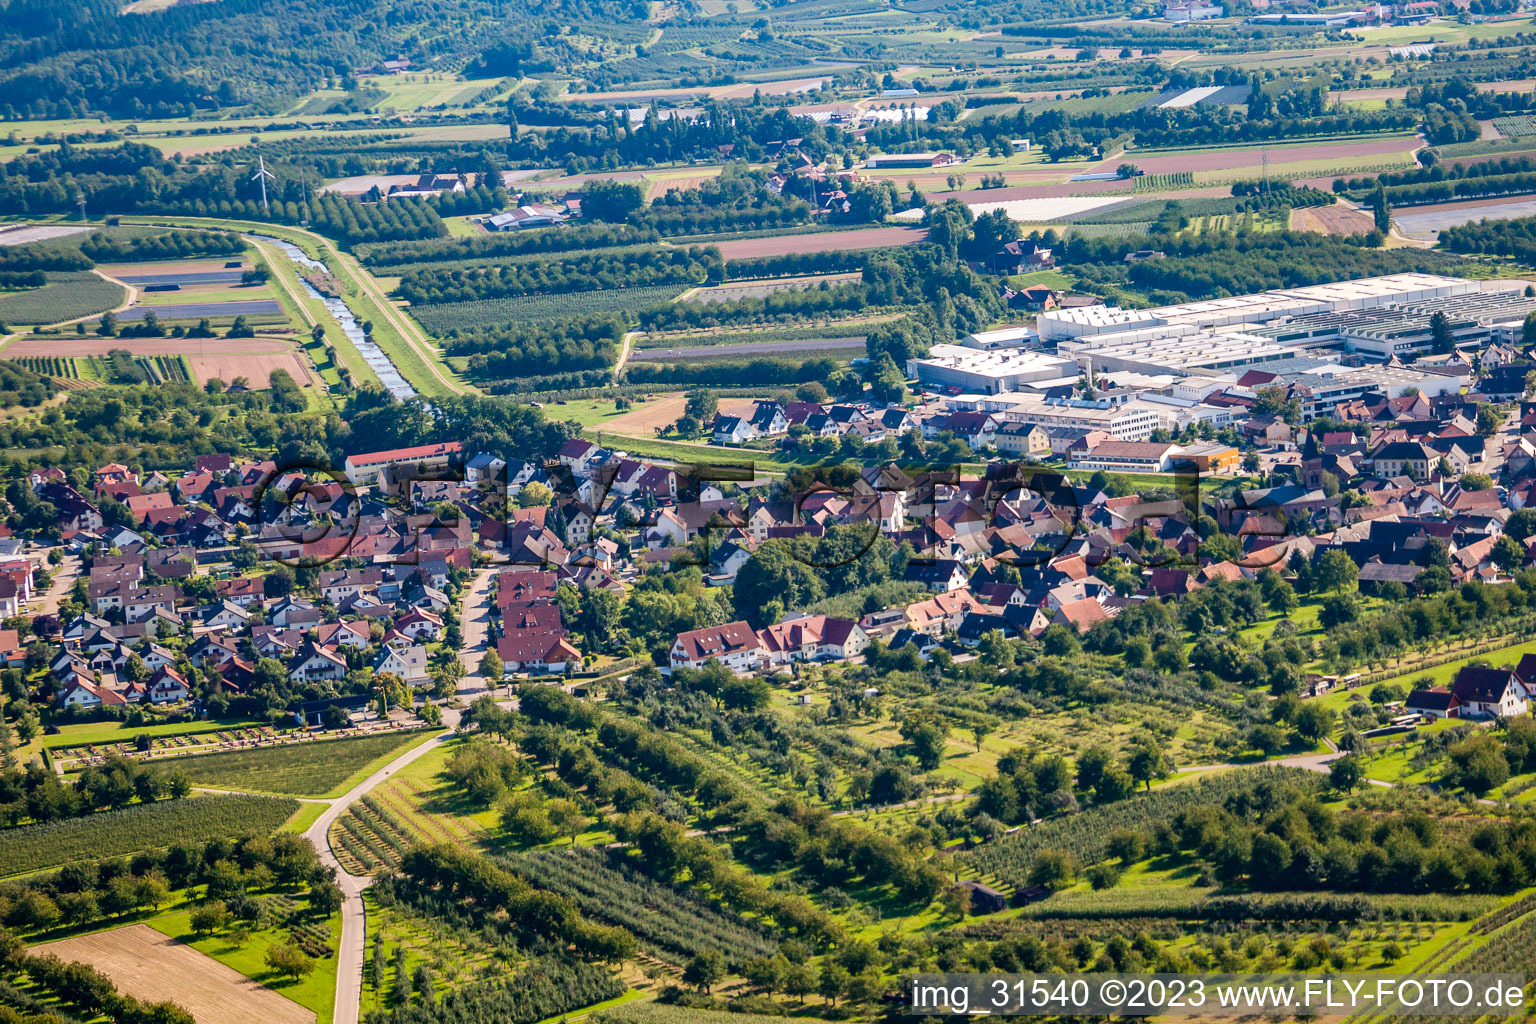 Luftbild von Ortsteil Stadelhofen in Oberkirch im Bundesland Baden-Württemberg, Deutschland